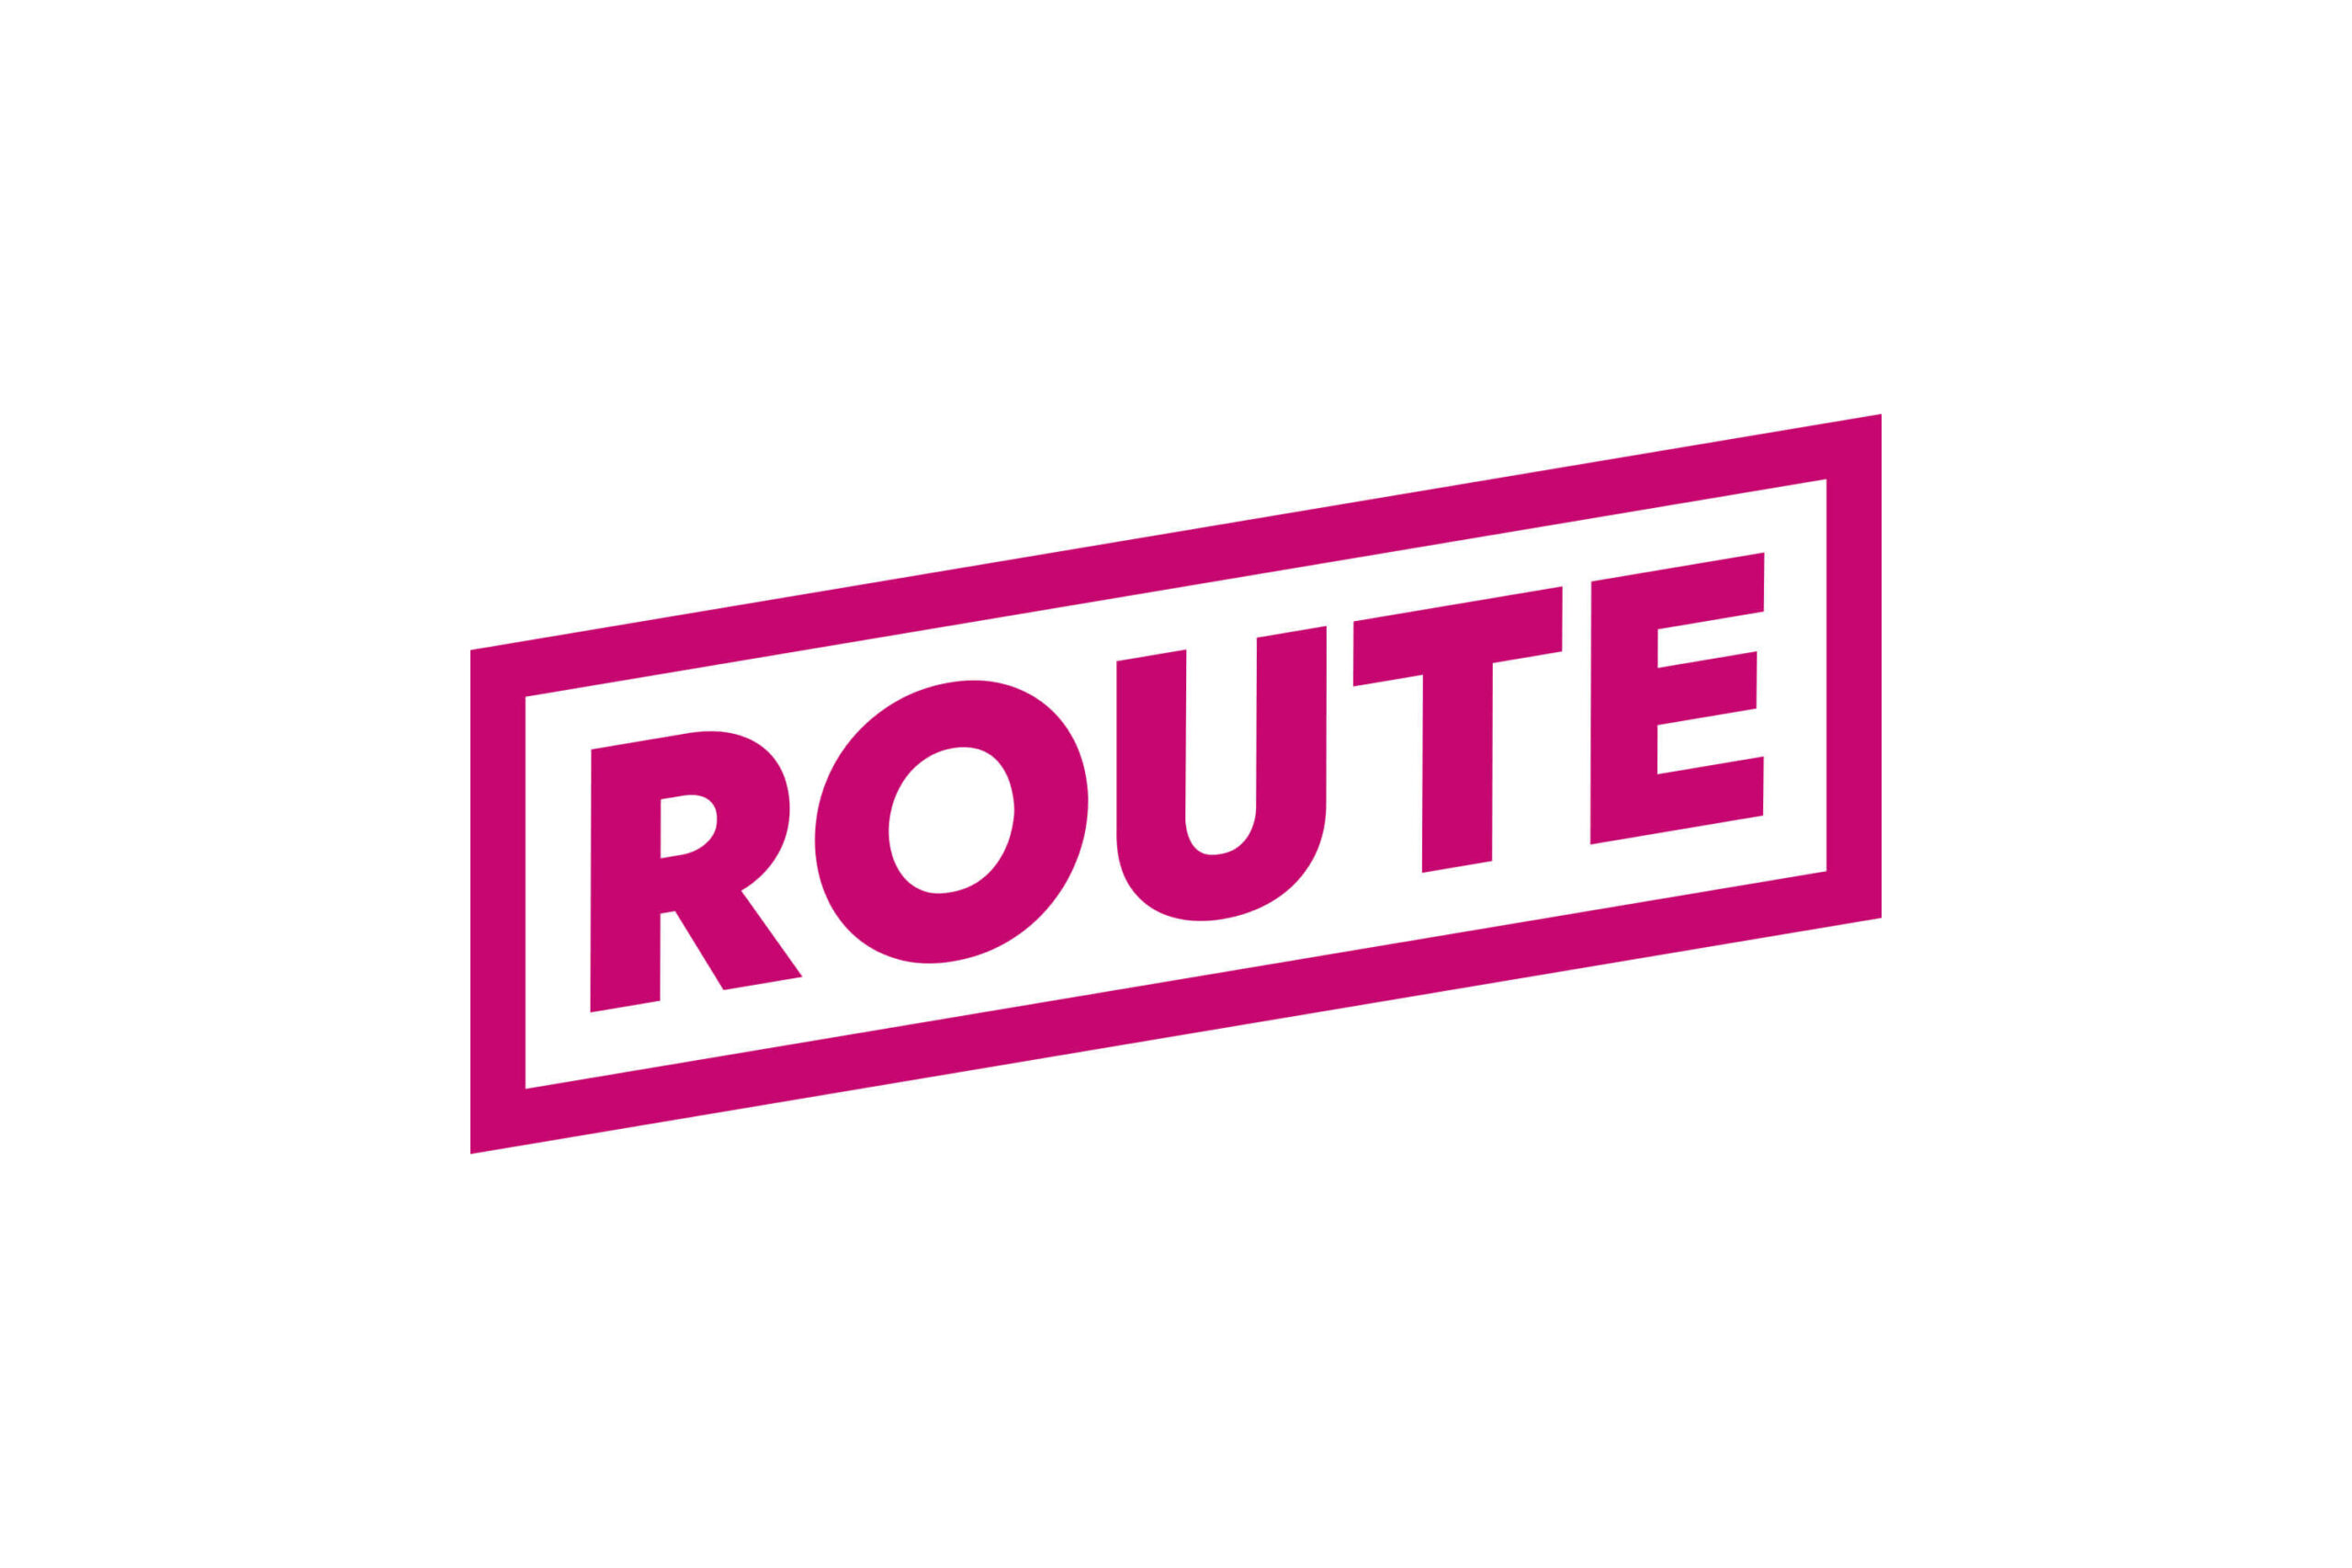 Route's future landscape intro logo